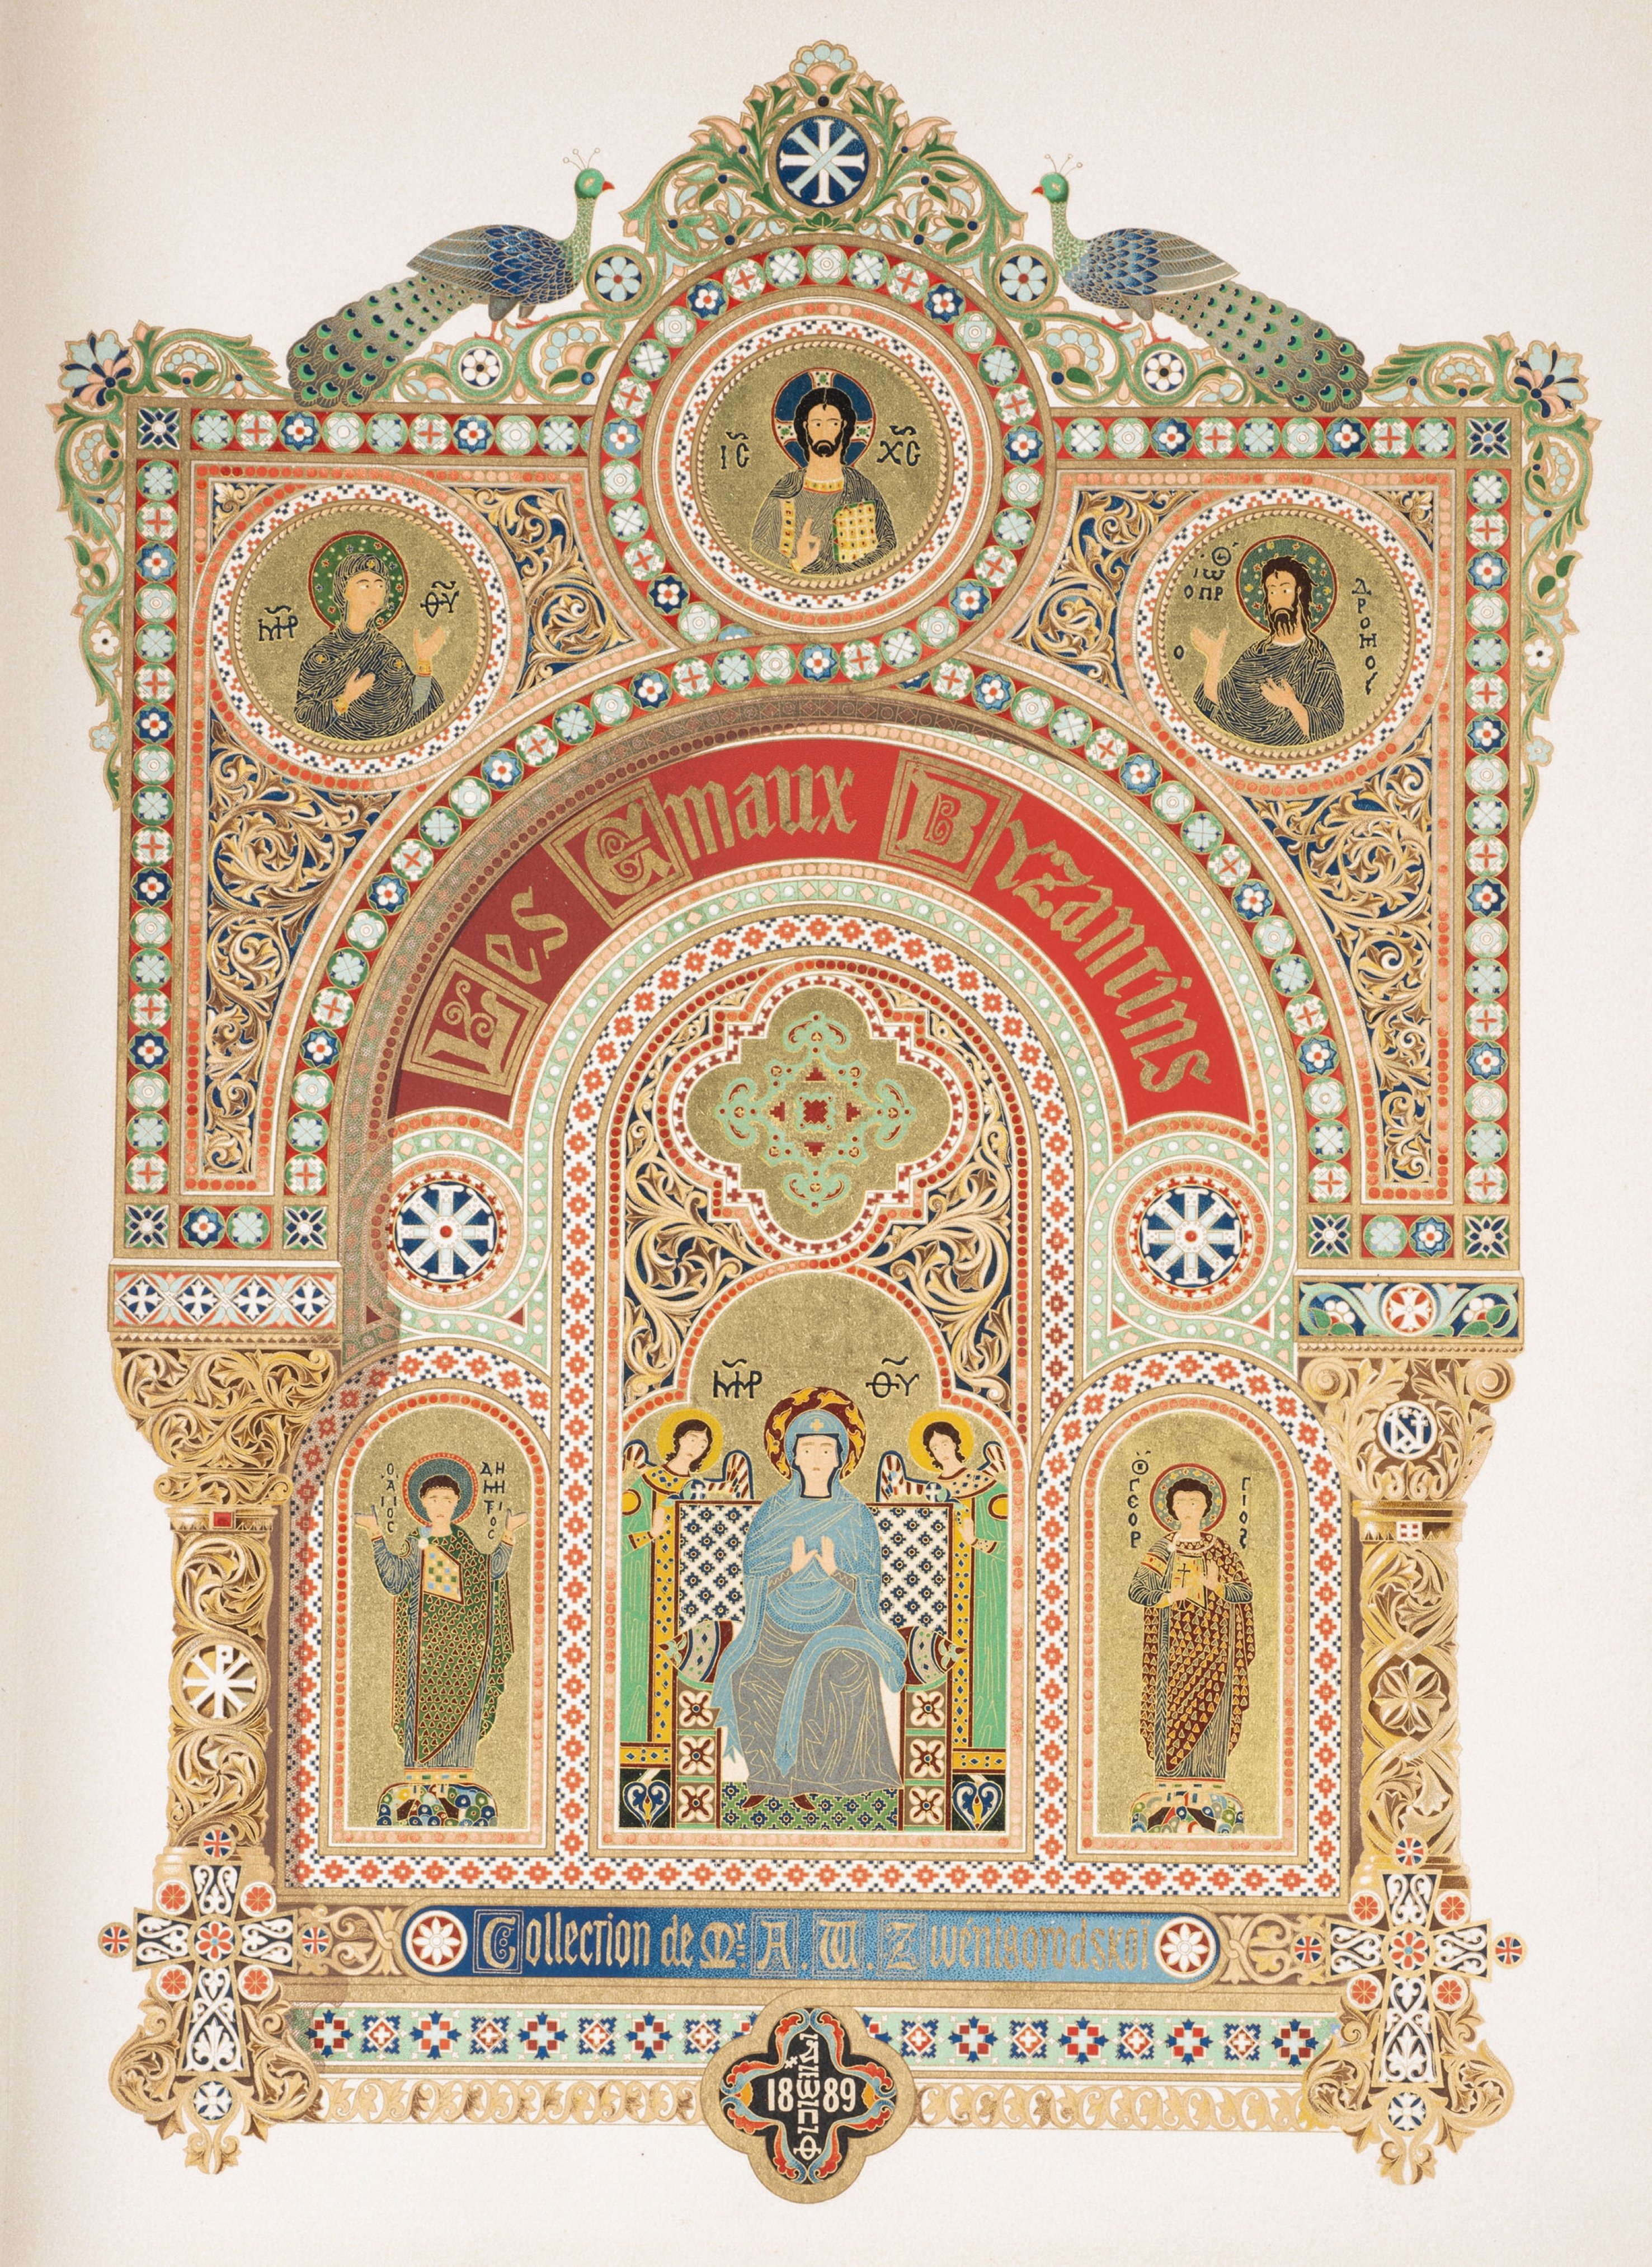 Volume mewah pada enamel Bizantium.  (Sumber Museum Pera)